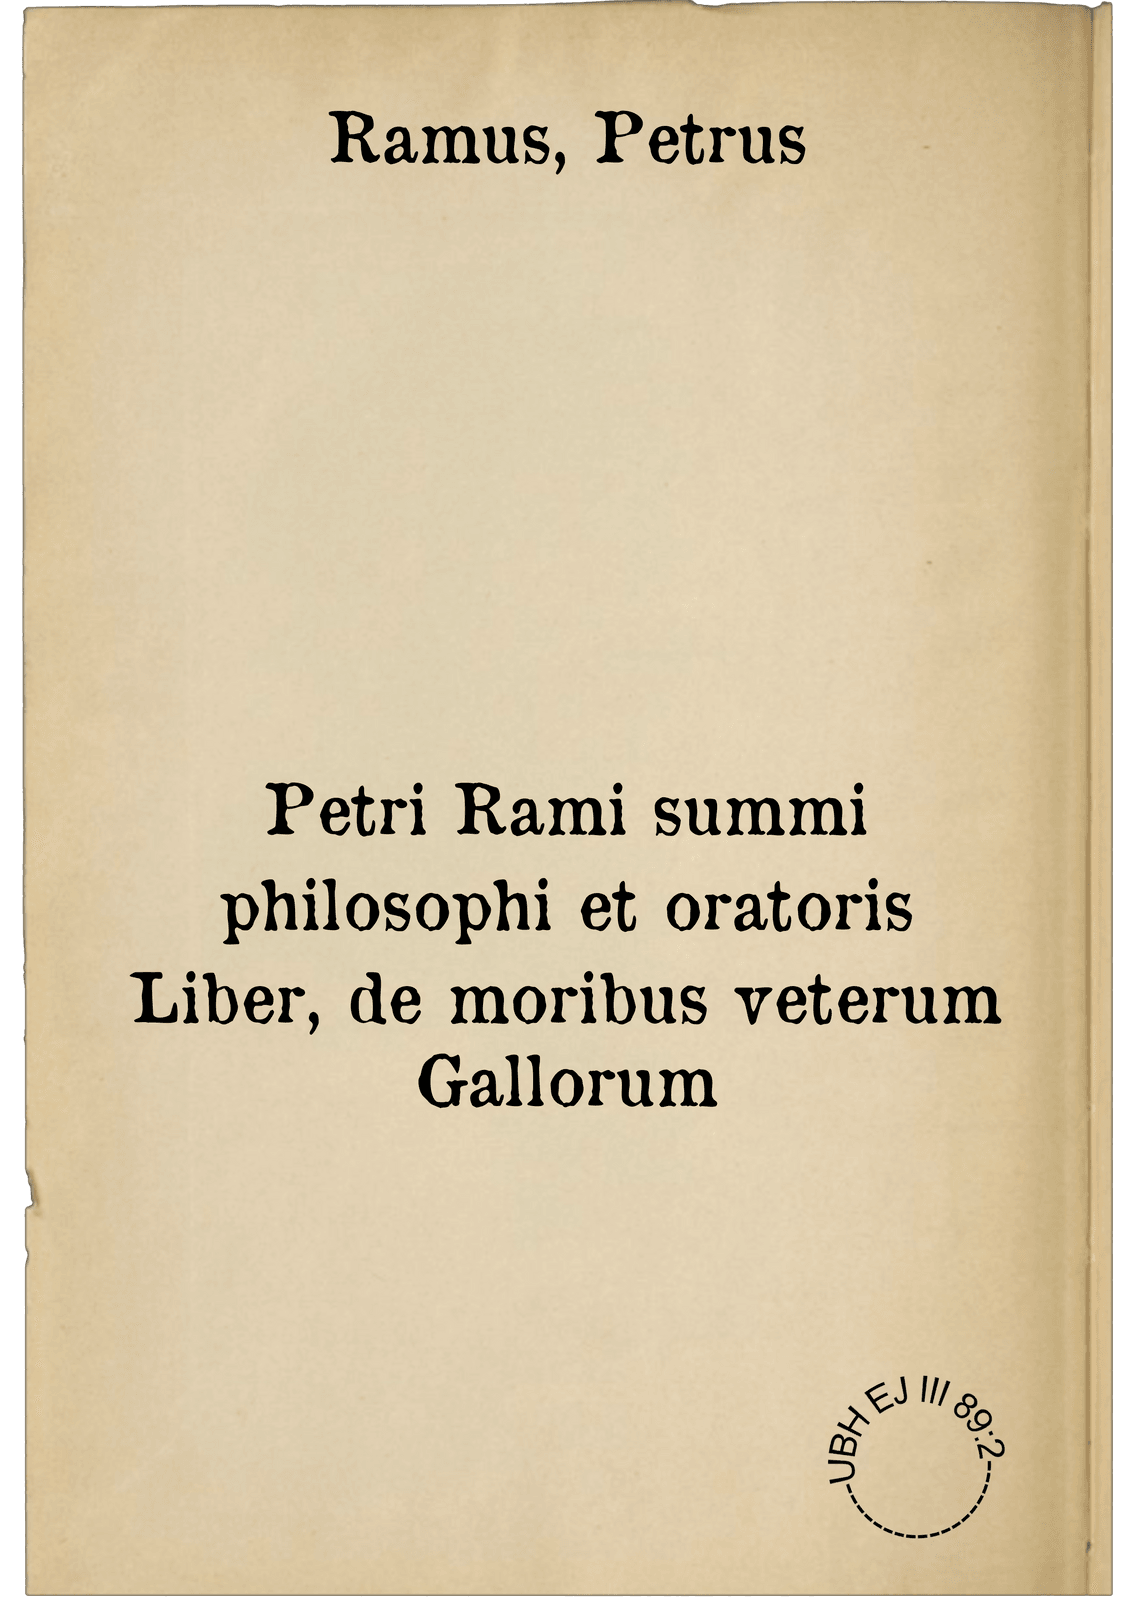 Petri Rami summi philosophi et oratoris Liber, de moribus veterum Gallorum